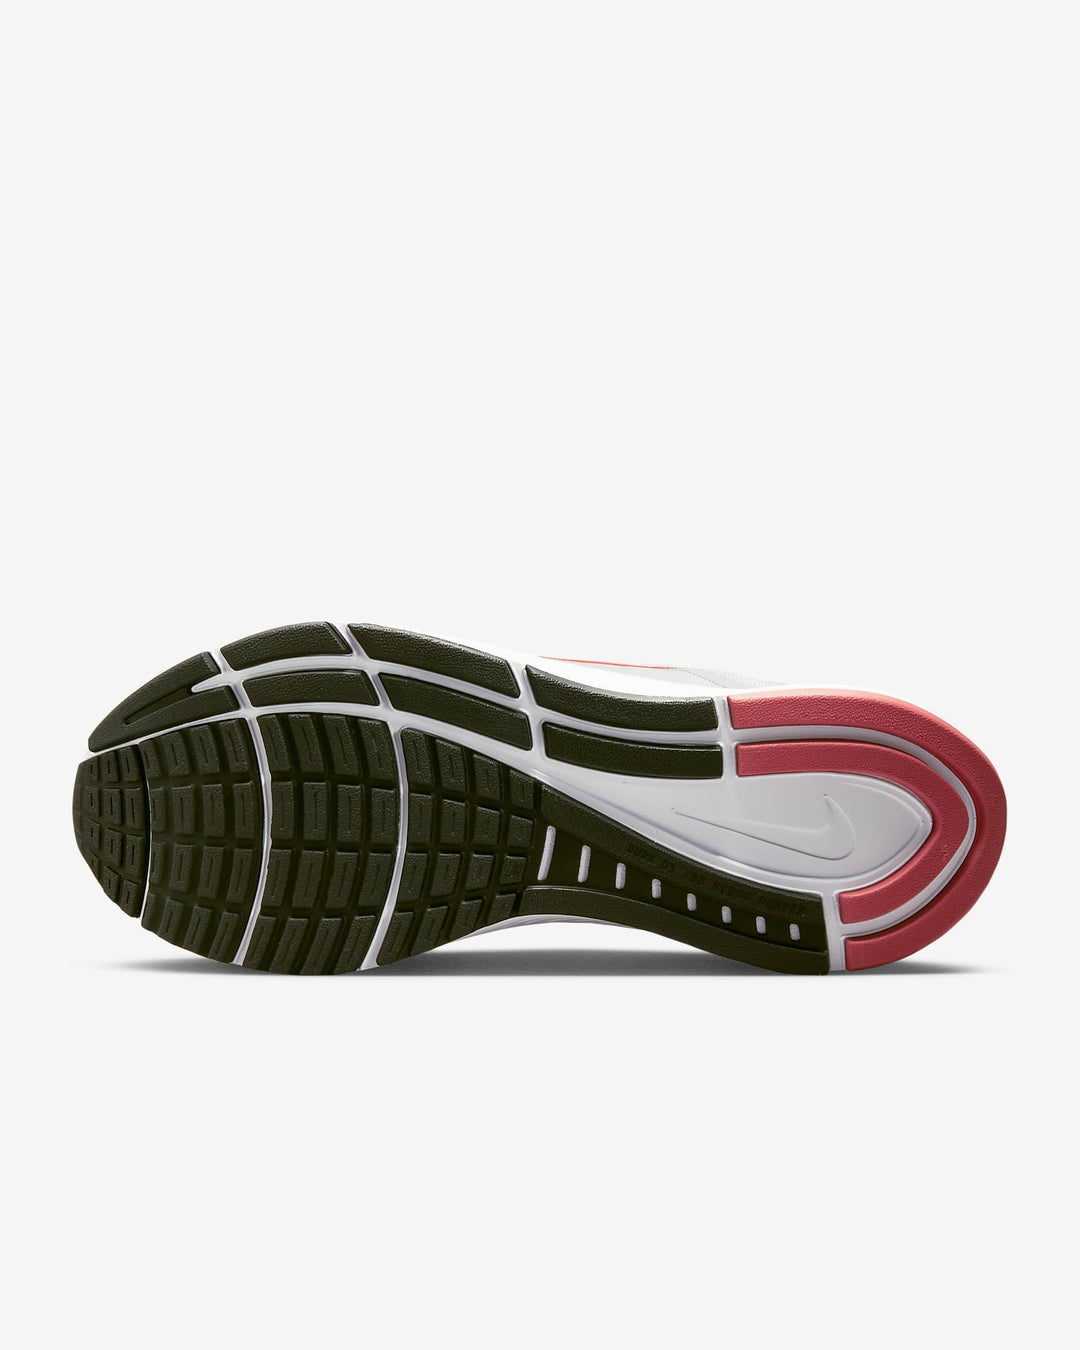 Giày Nike Structure 24 Men Shoes #Photon Dust - Kallos Vietnam